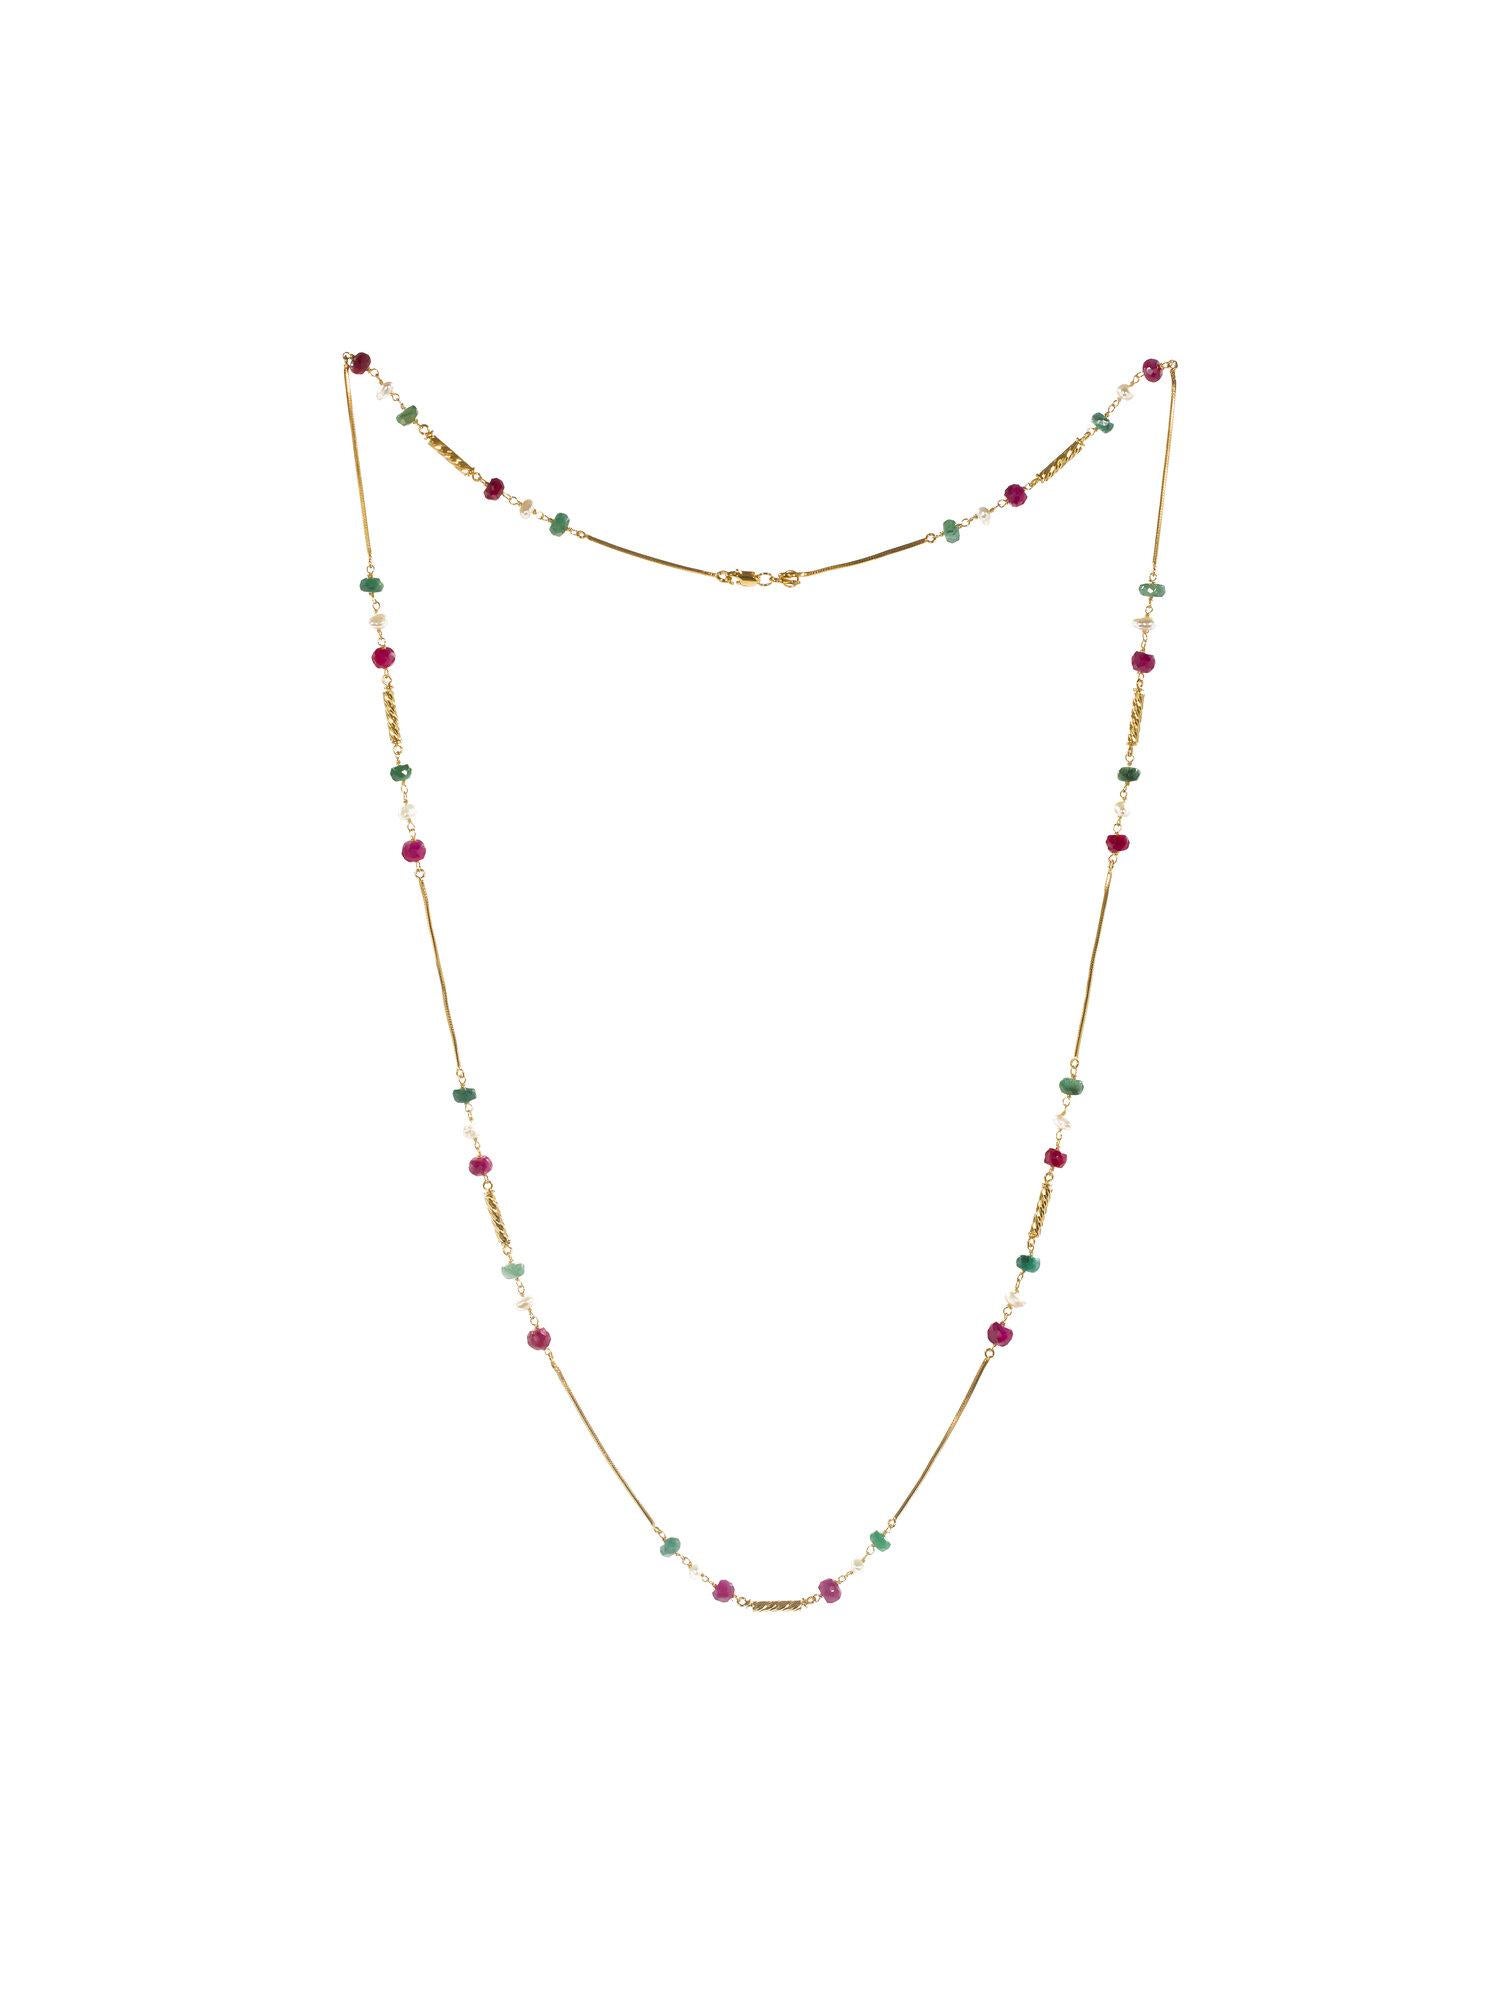 Halskette aus 18/22 Karat Gold, zart verziert mit Perlen, Rubinen und Smaragden. Inspiriert von den Farben des traditionellen Beduinenschmucks, ist Marriyeh eine Hommage an die Mütter unserer Nation.

